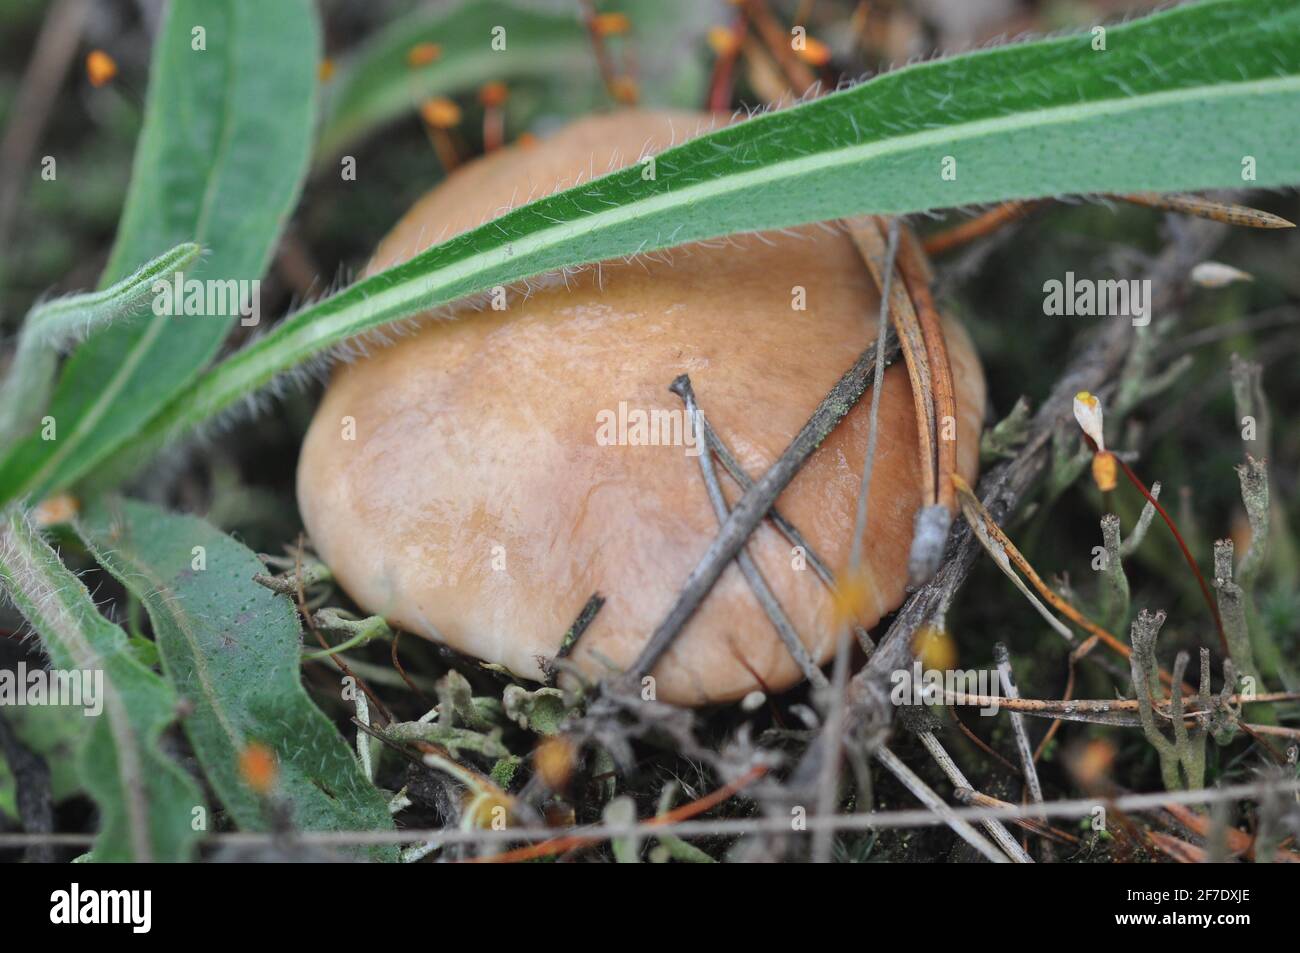 Schöne Pilze von Boletus, die in Nadelwäldern wachsen. Pilze zwischen Kiefernnadeln. Boletus - essbarer Pilz. Pilz in der natürlichen Umgebung Stockfoto